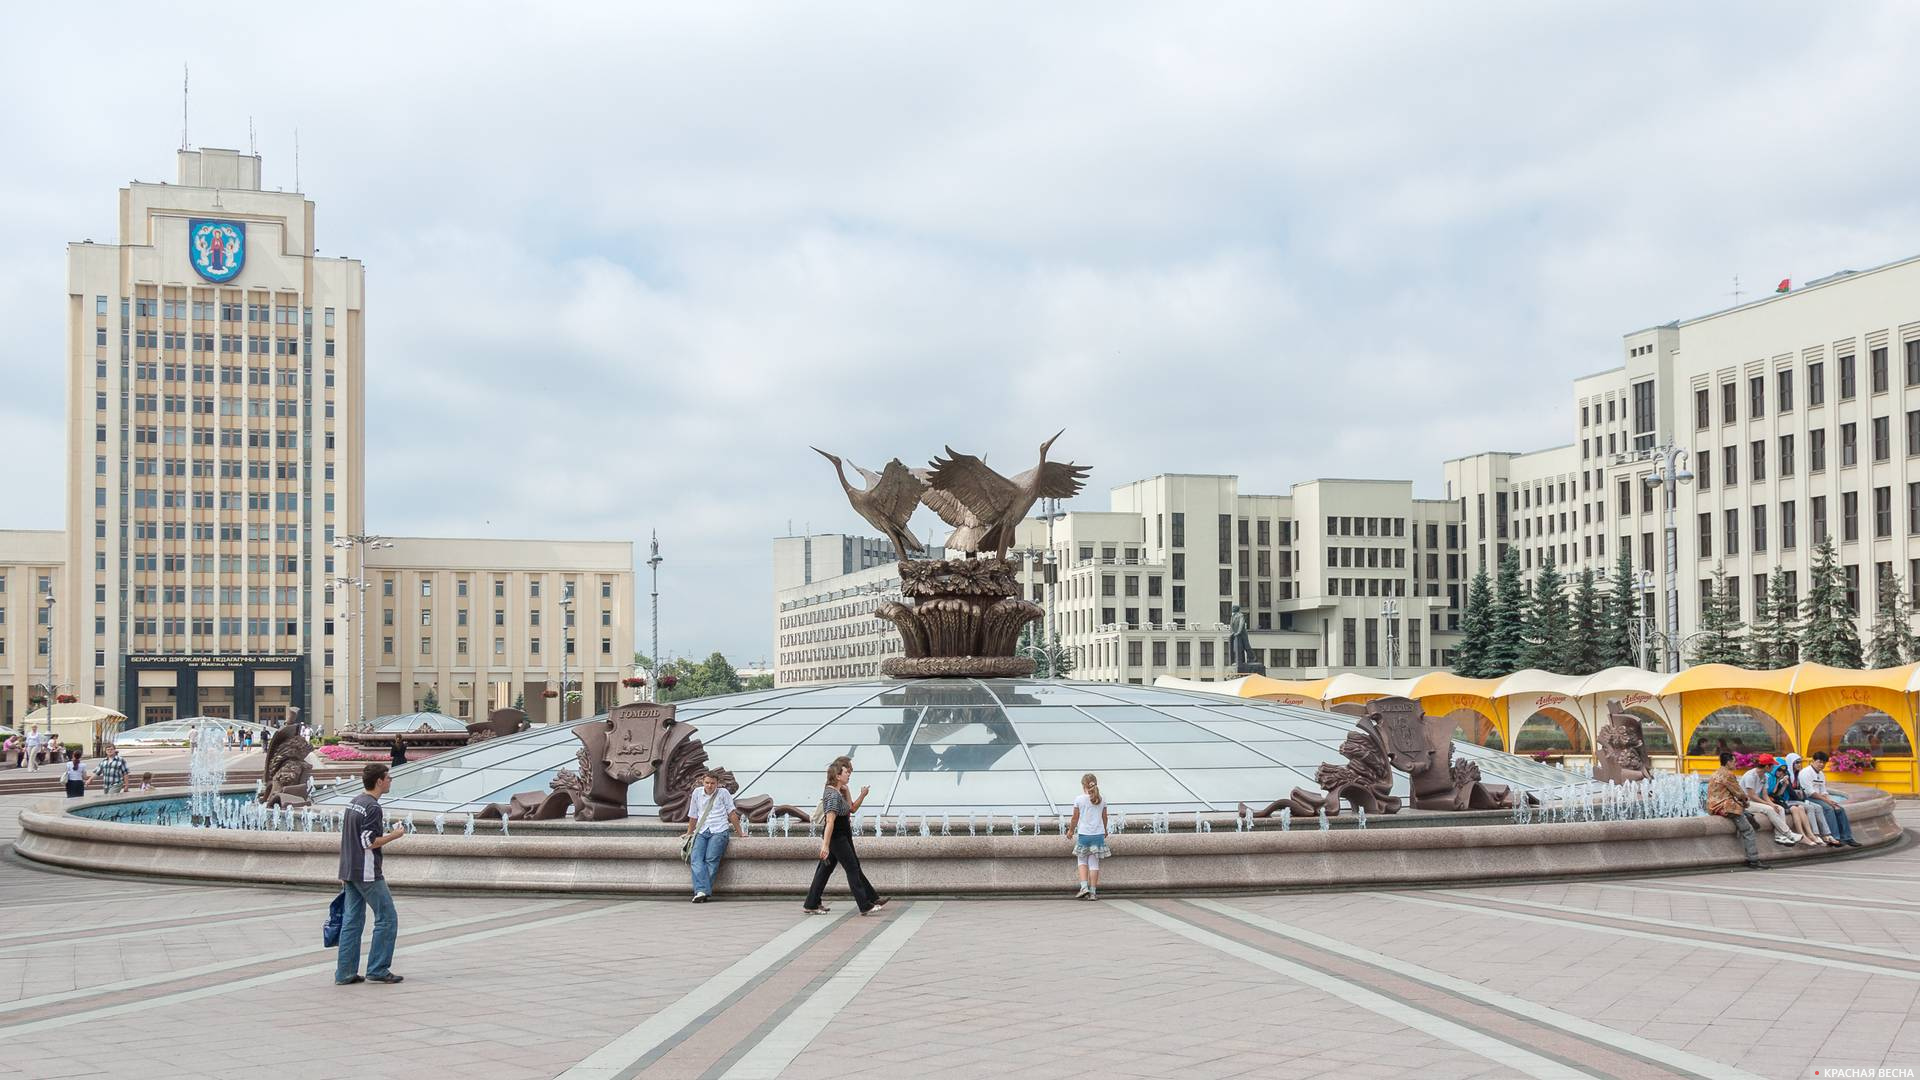 Площадь Независимости, Минск, Белоруссия